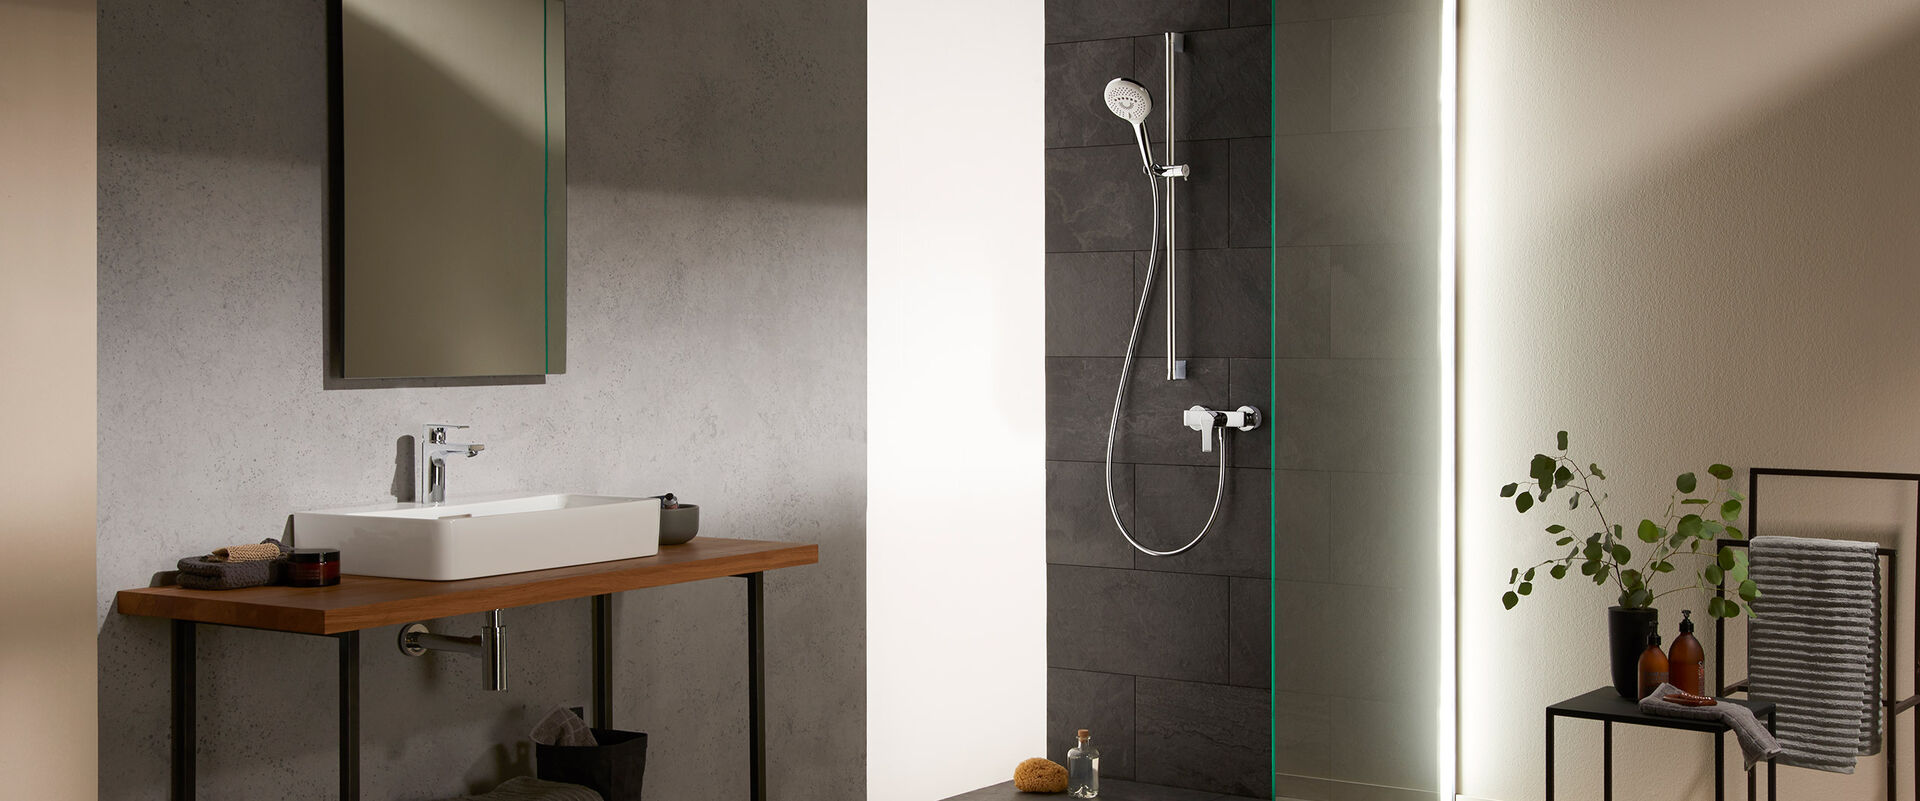 Armaturen aus einem Guss für Ihr Badezimmer: Kludi Zenta SL bietet Lösungen für das Waschbecken, zum Befüllen der Badewanne und für die Dusche.